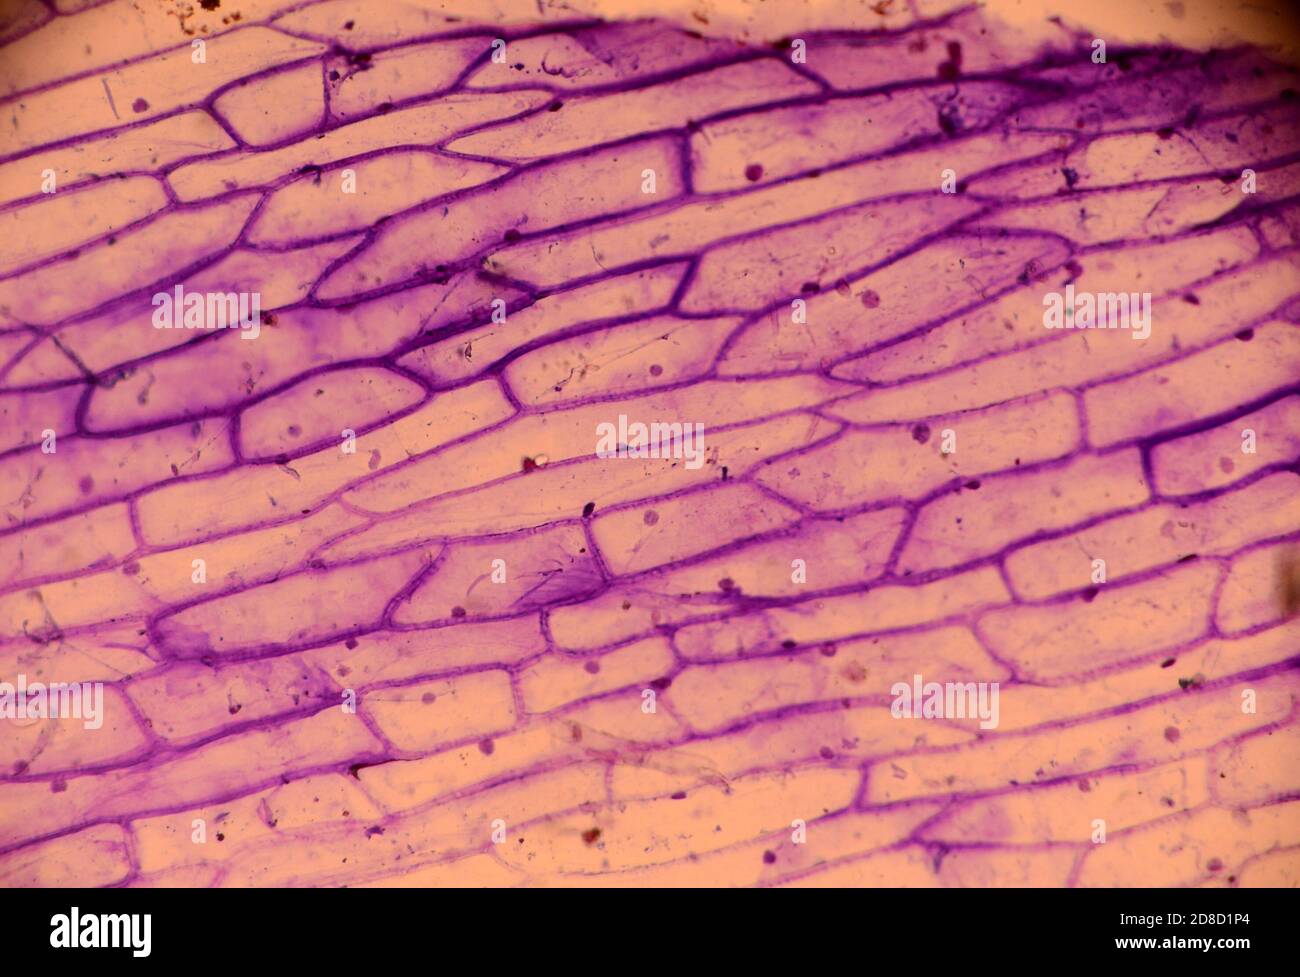 Microscopie de peau d'oignon colorée au violet de méthylène. Les parois cellulaires et le noyau cellulaire sont visibles. Banque D'Images